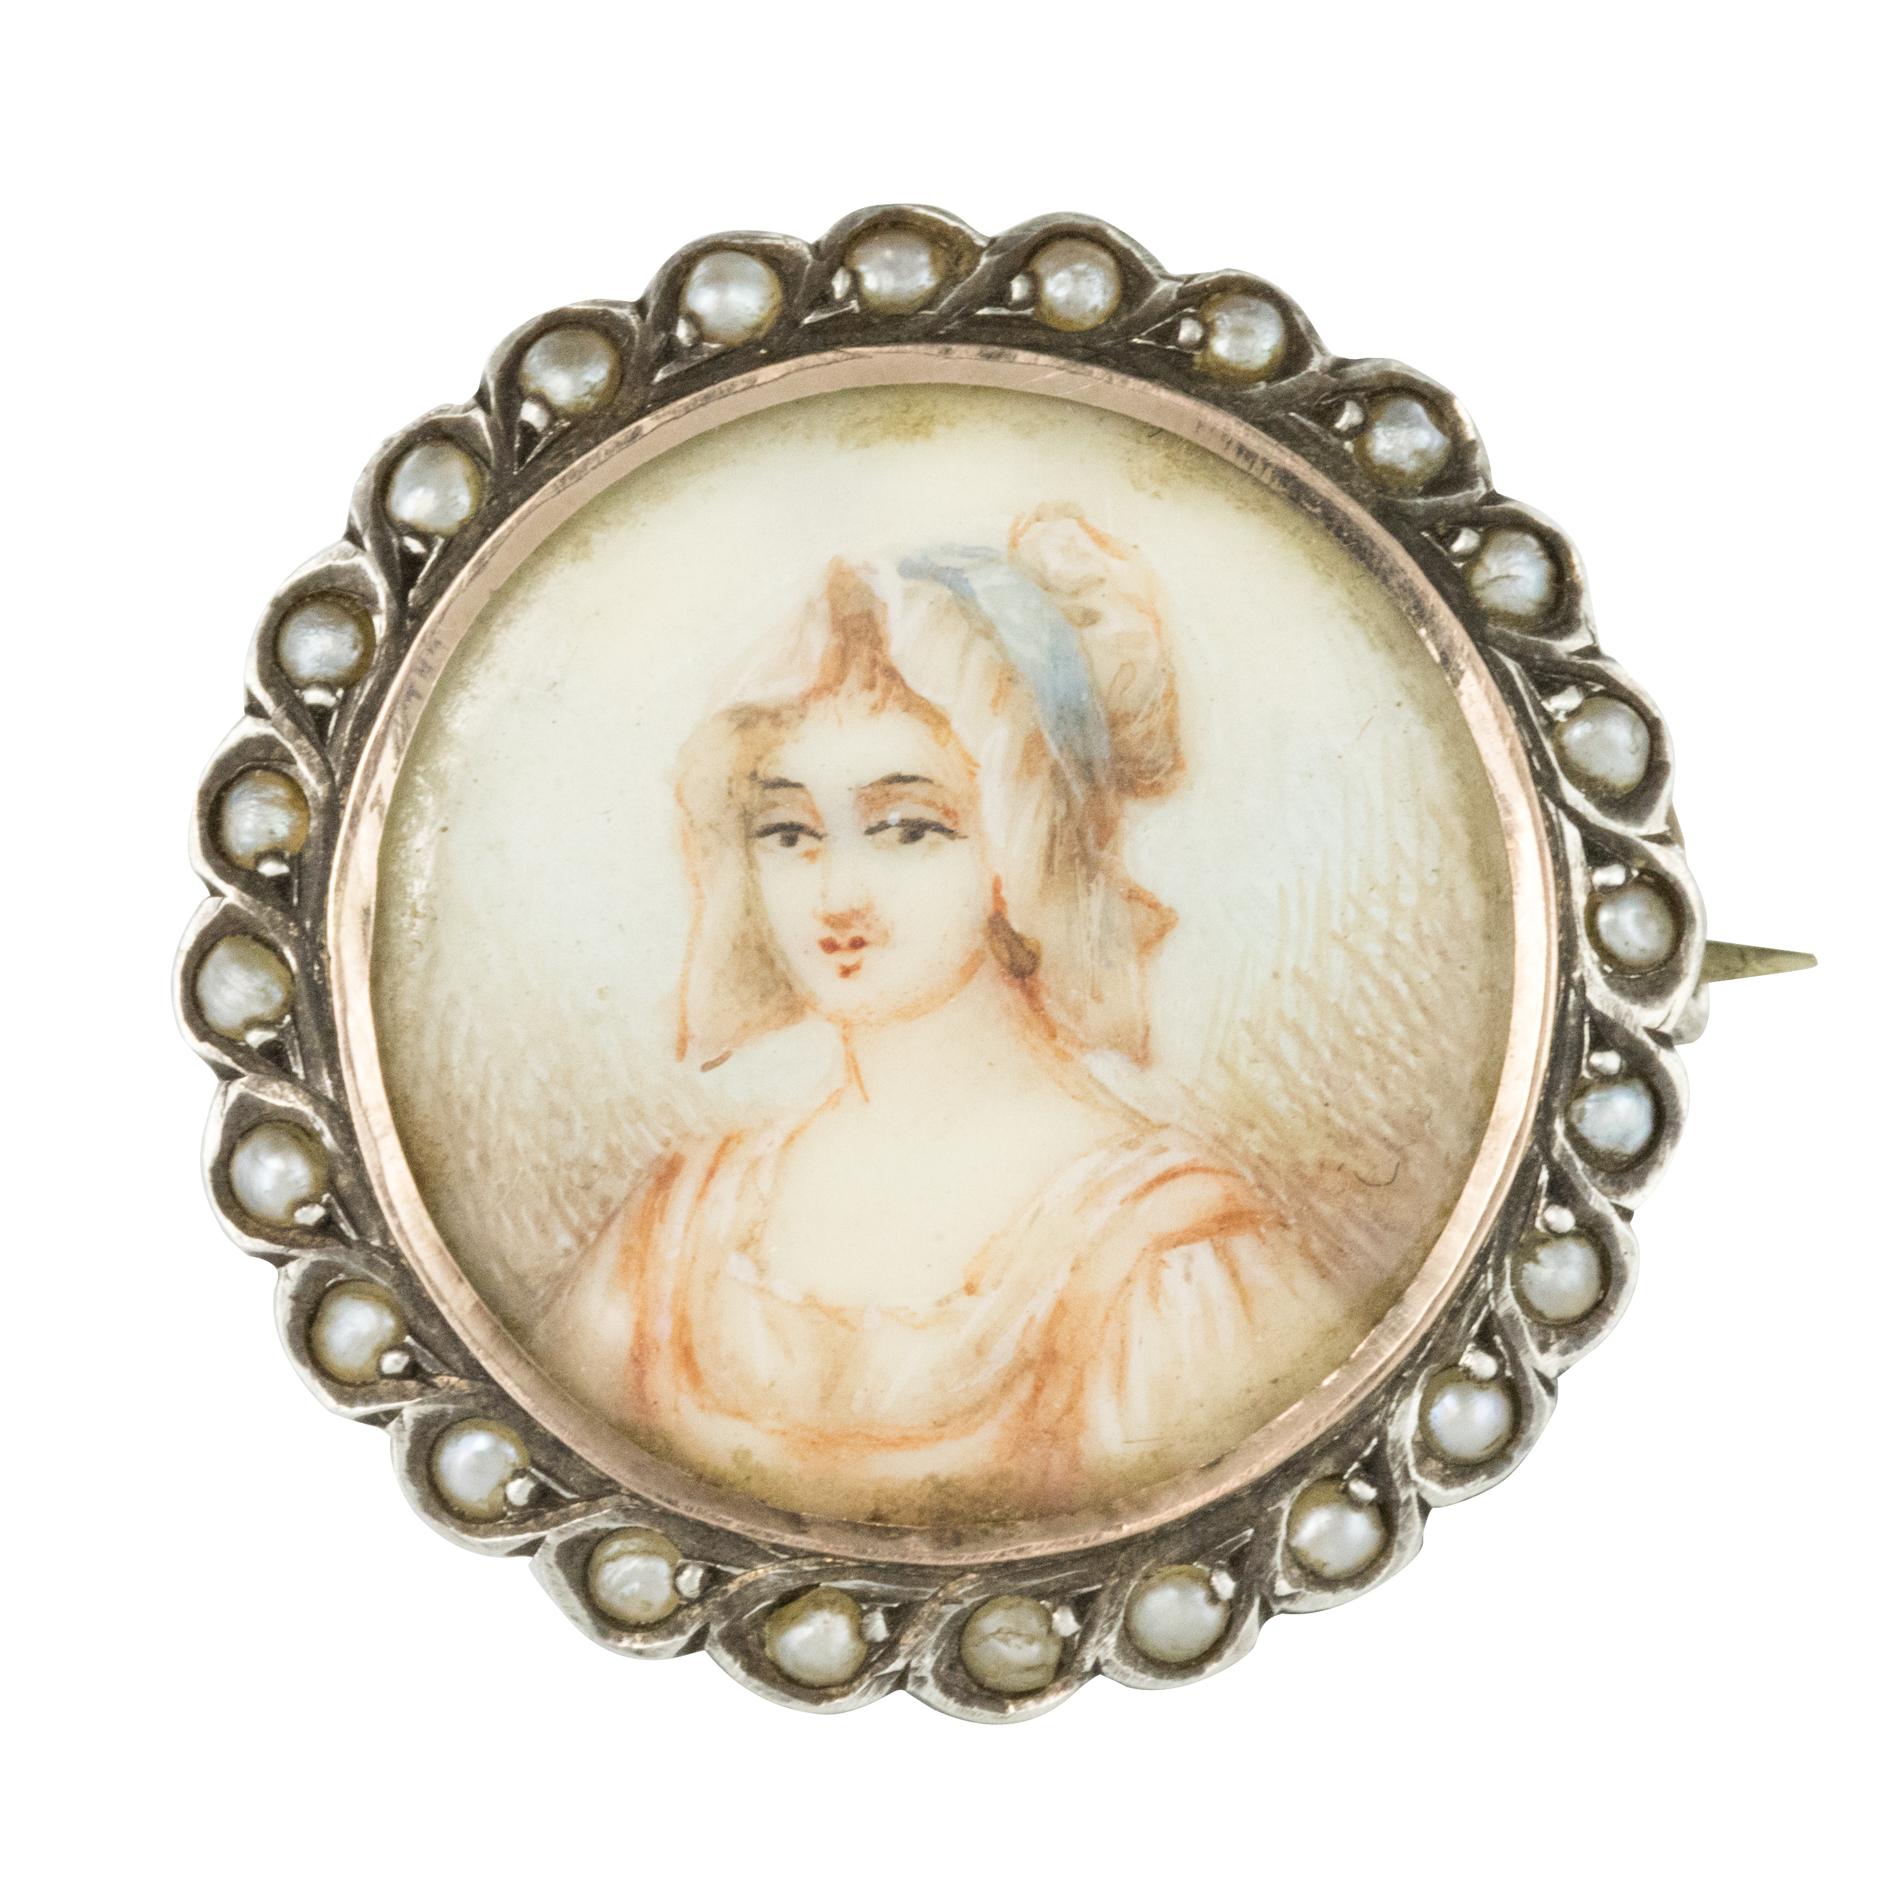 Miniatur- und Perlenbrosche aus Silber des 19. Jahrhunderts